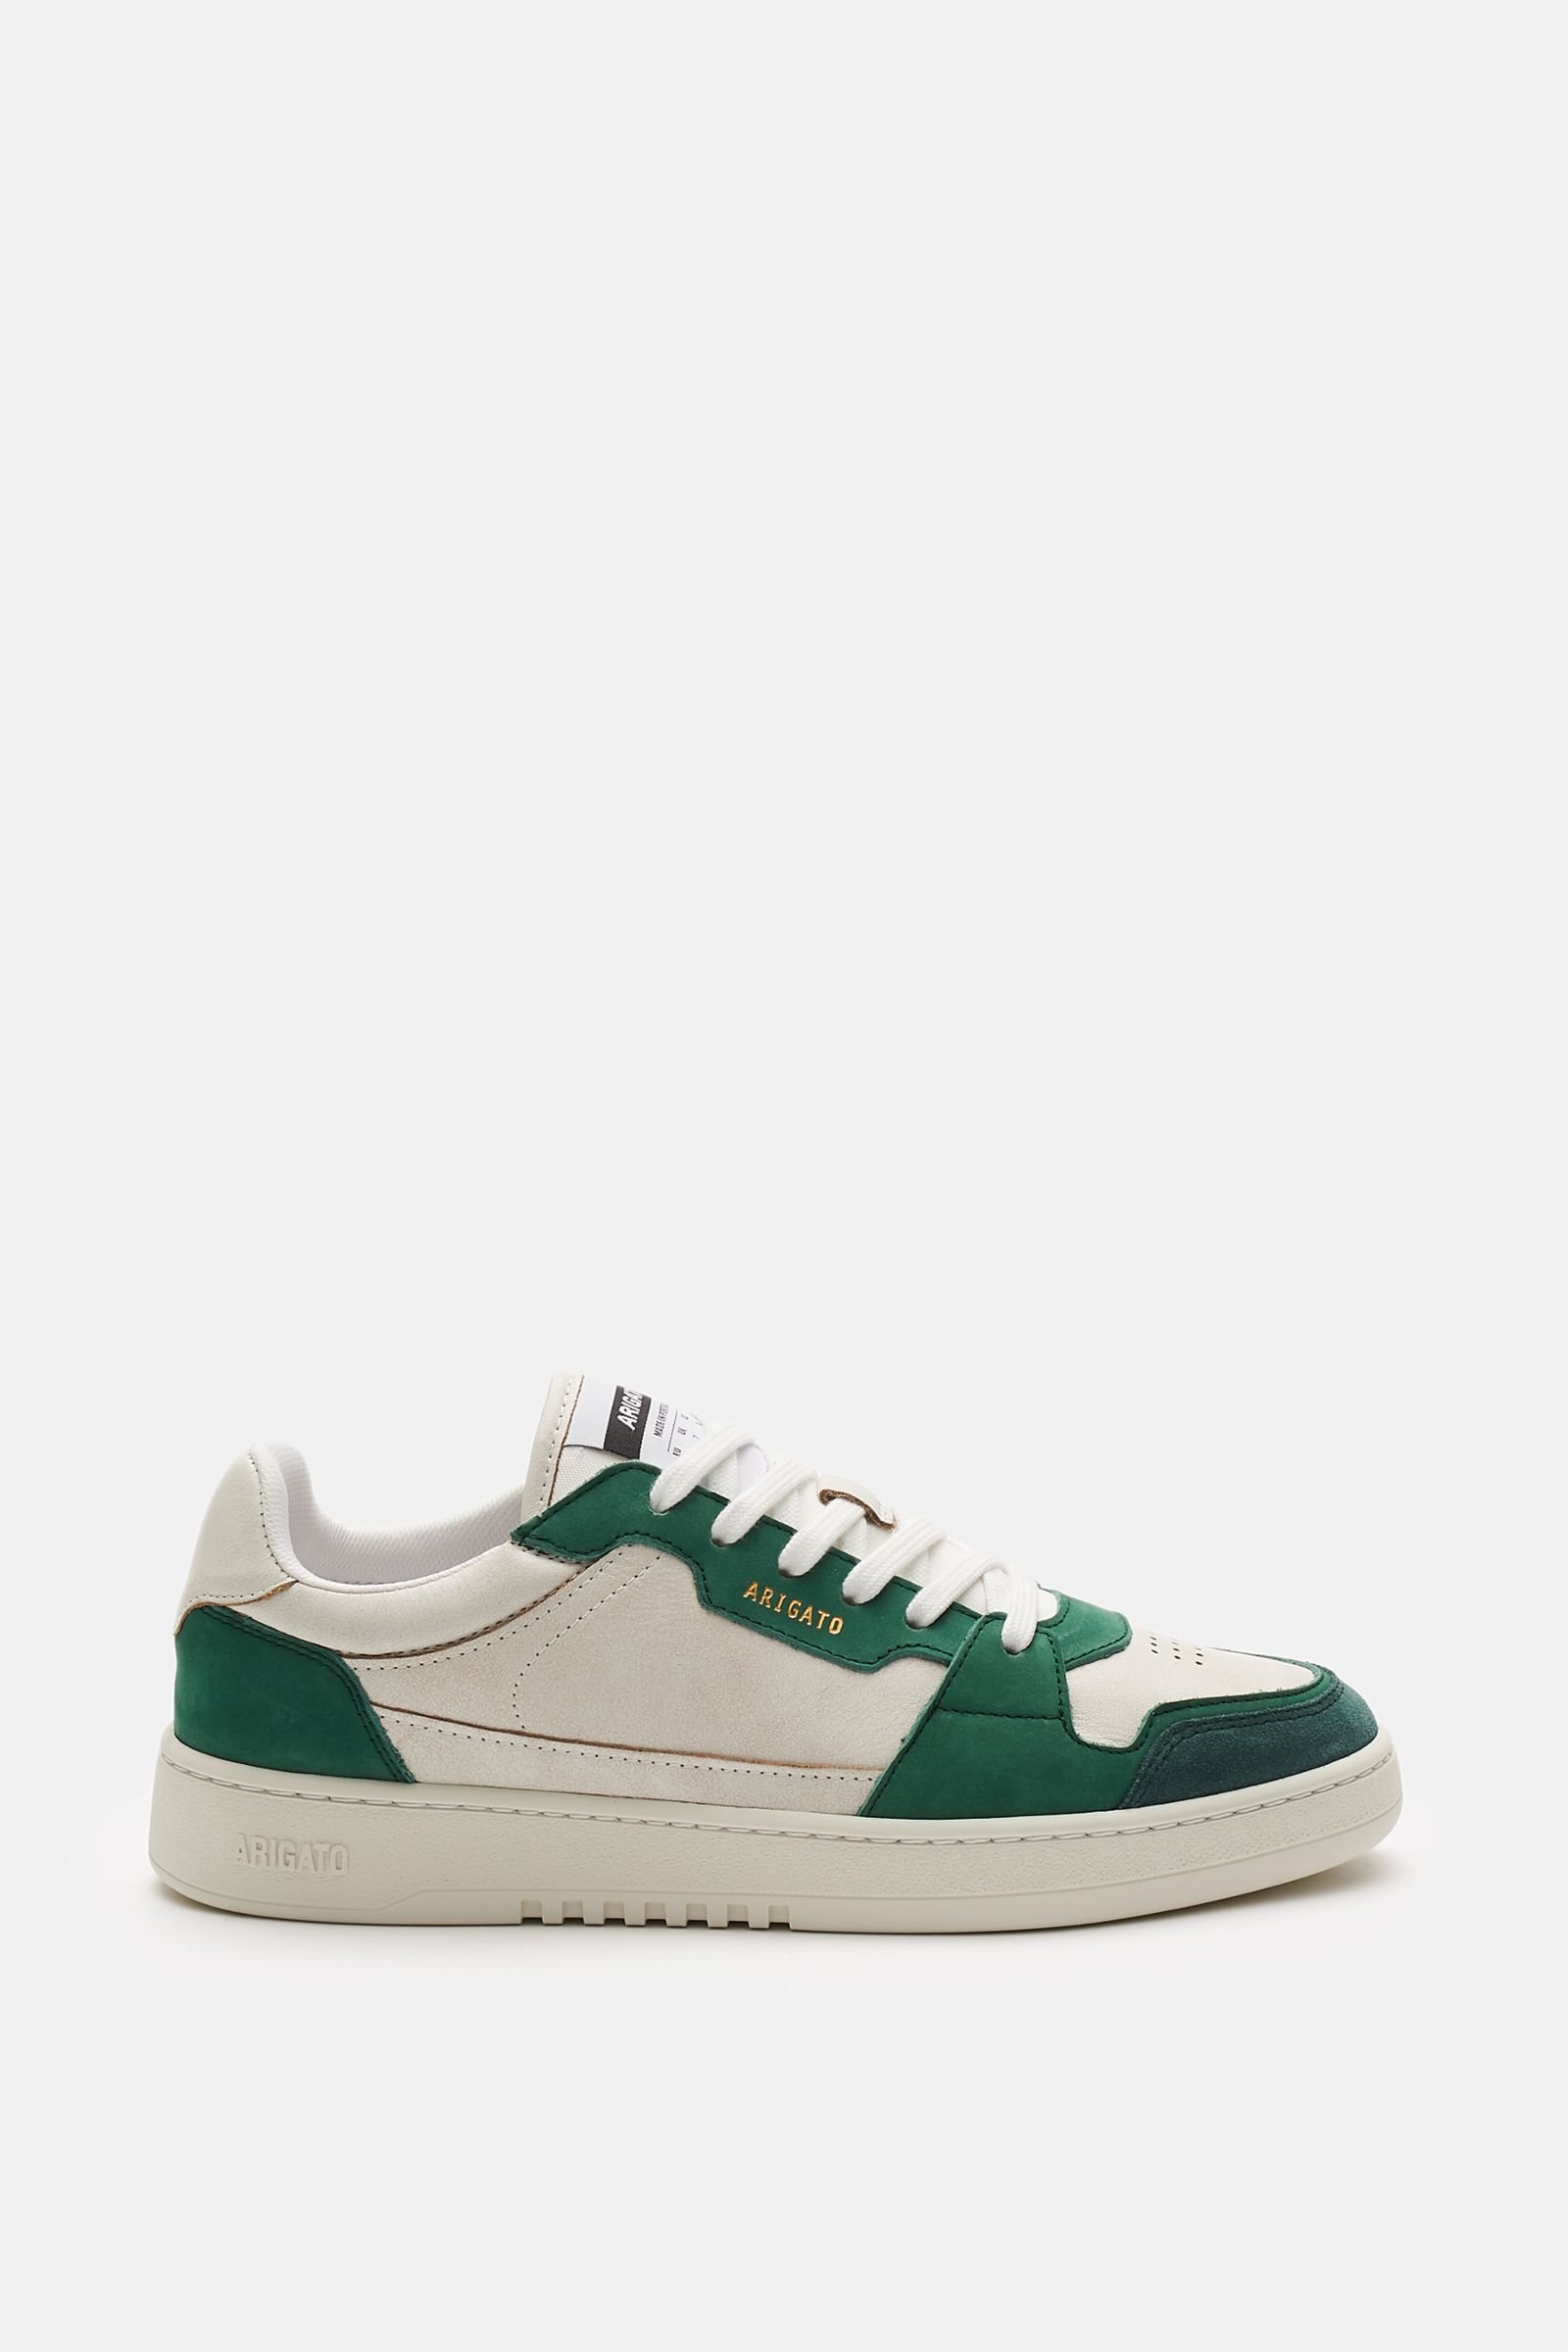 Sneakers 'Dice Lo' dark green/beige